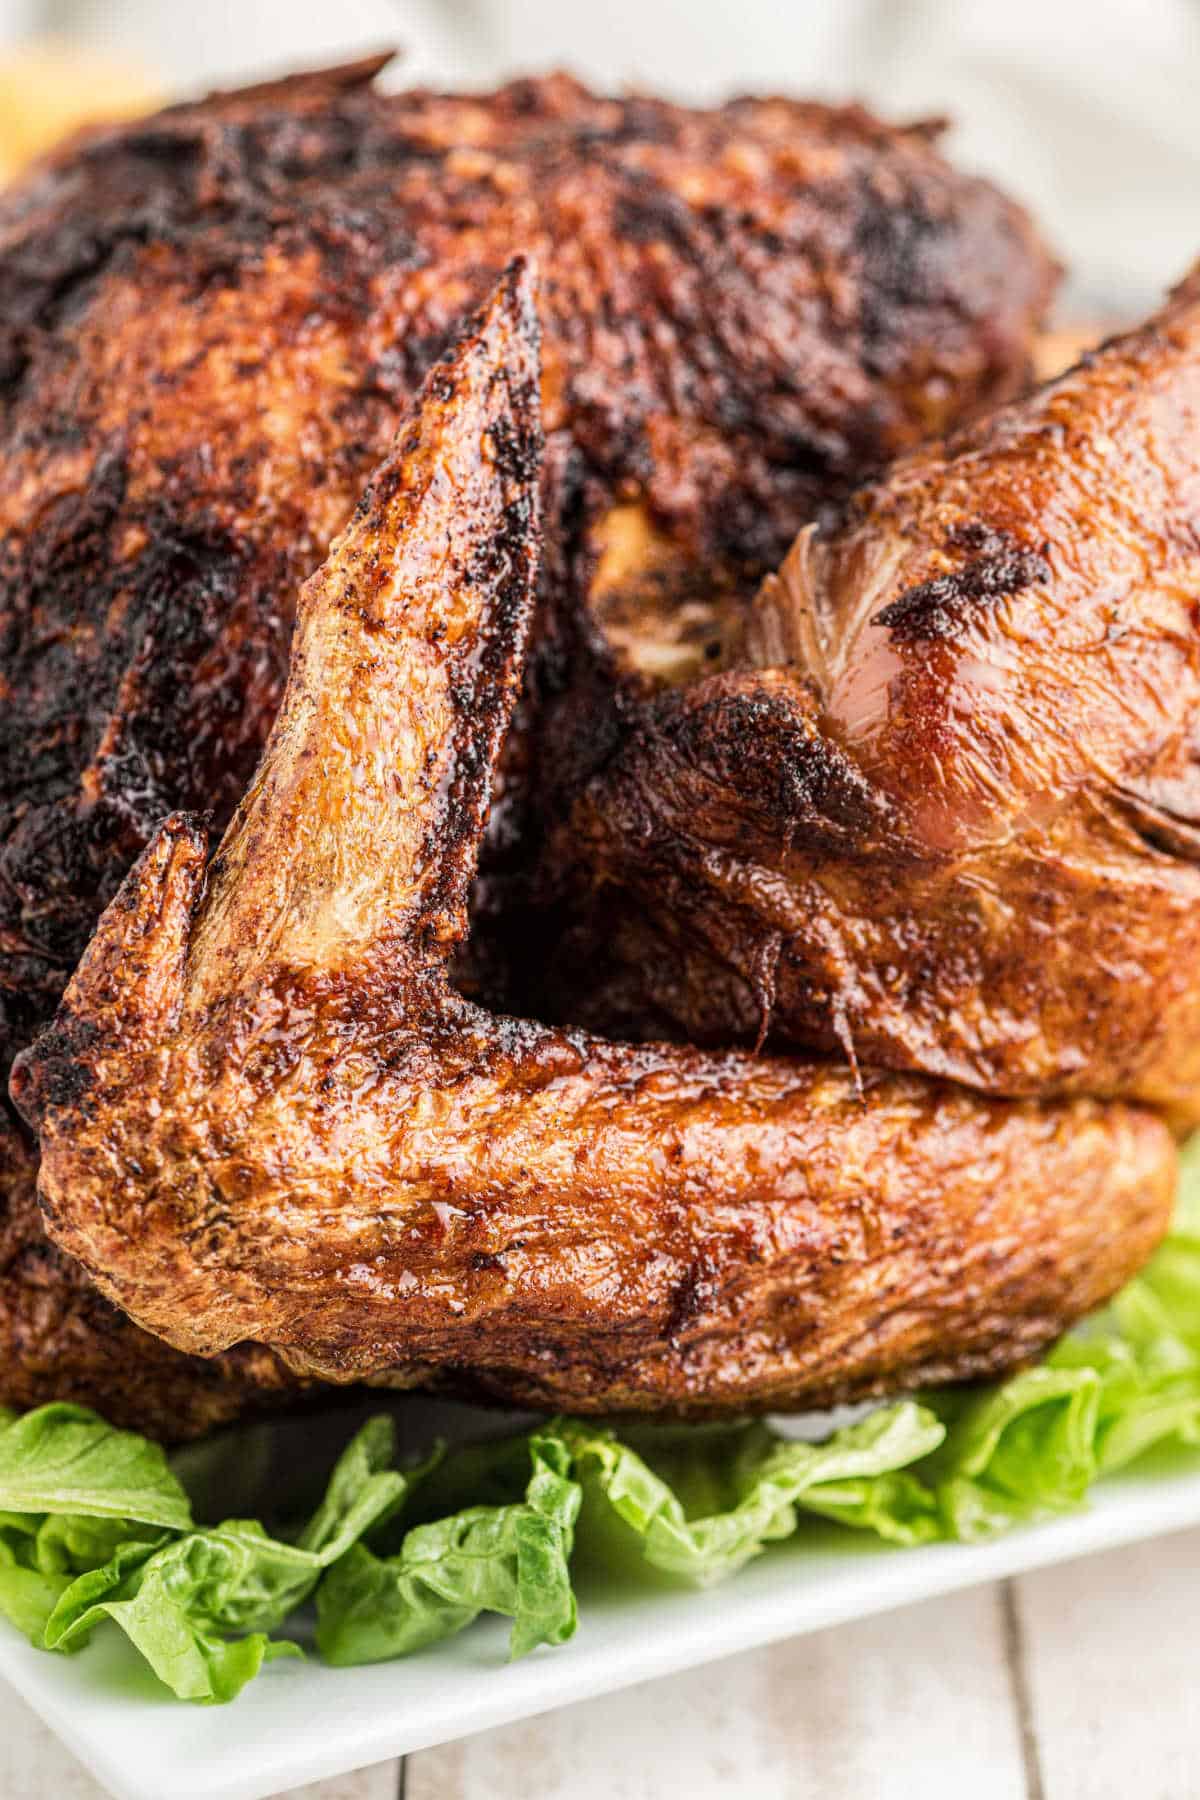 A close up shot of a deep fried turkey.